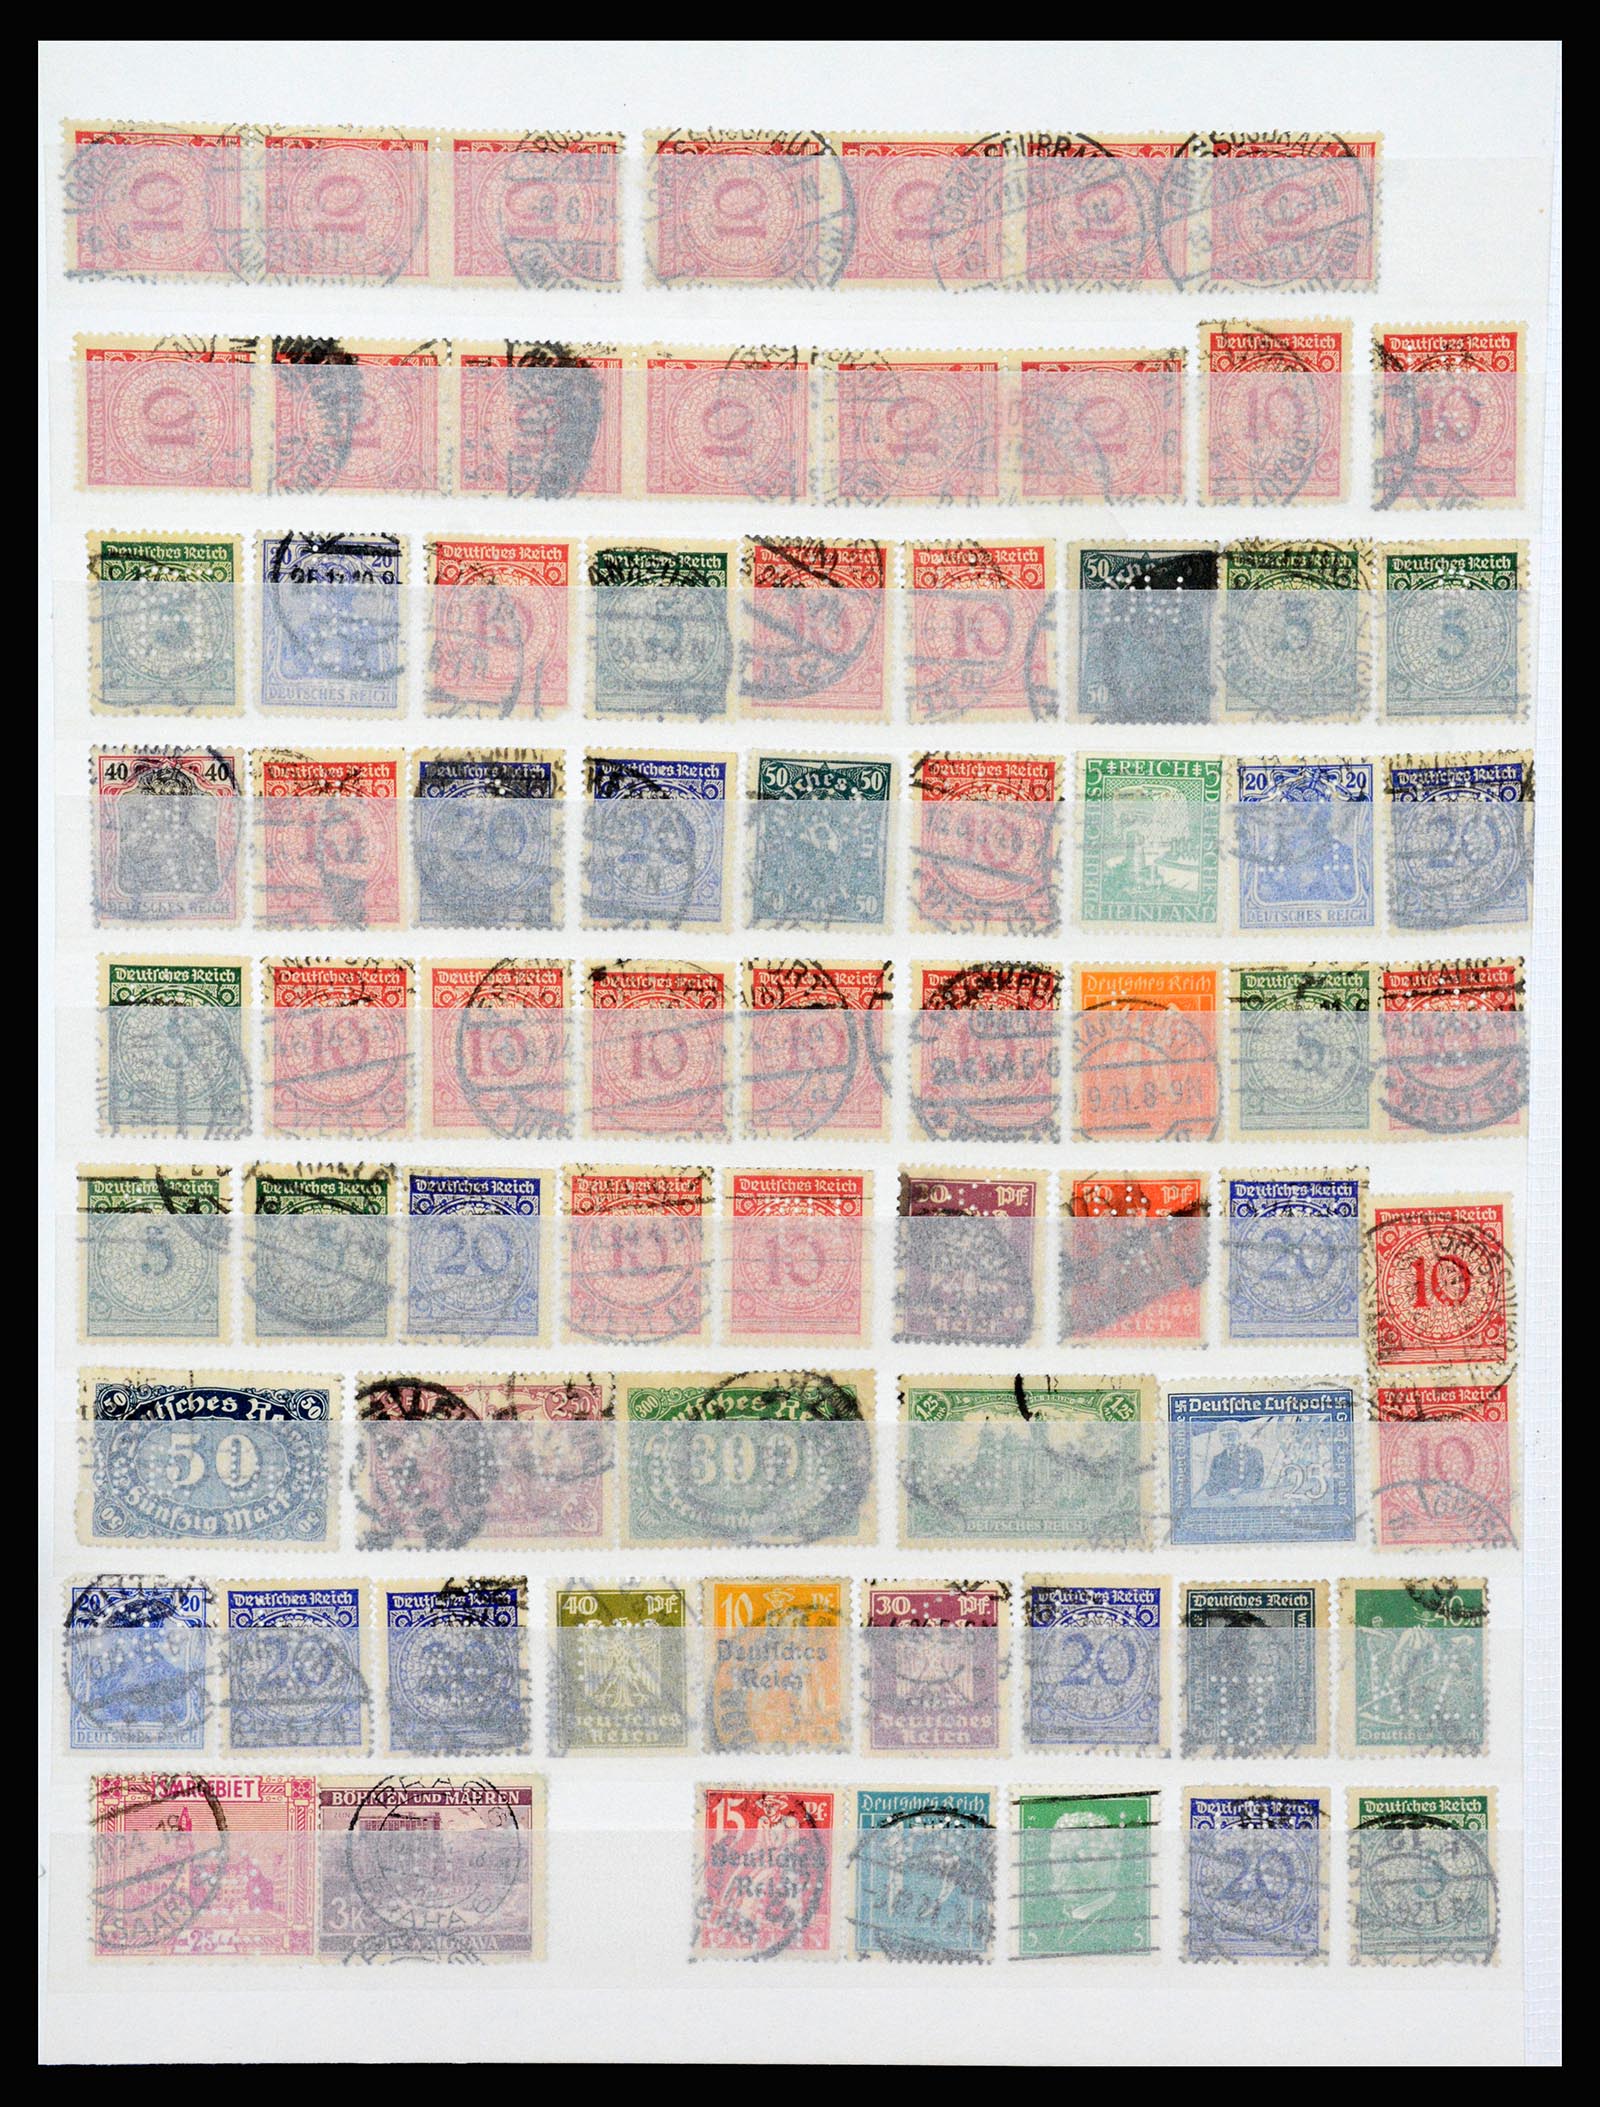 37254 008 - Stamp collection 37254 German Reich perfins 1900-1945.